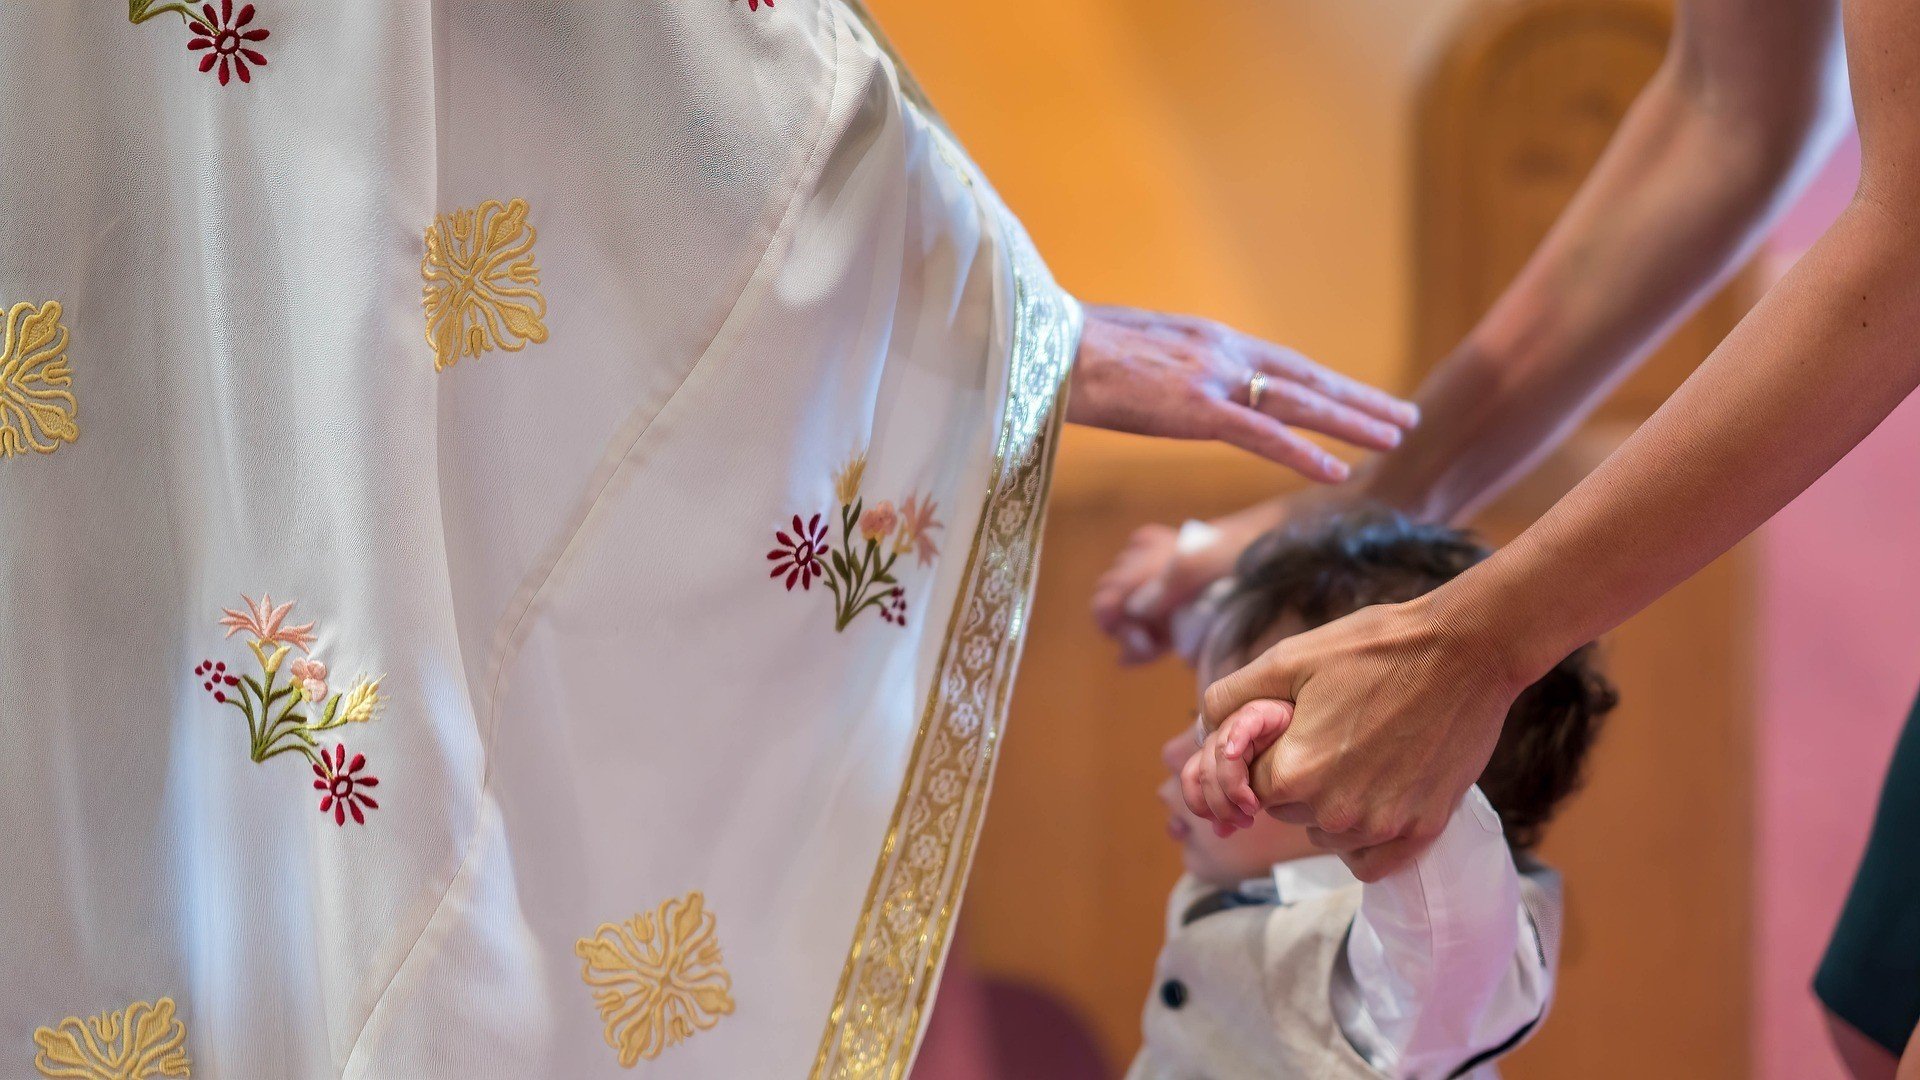 Padre católico ergue a mão sobre uma criança para abençoá-la.